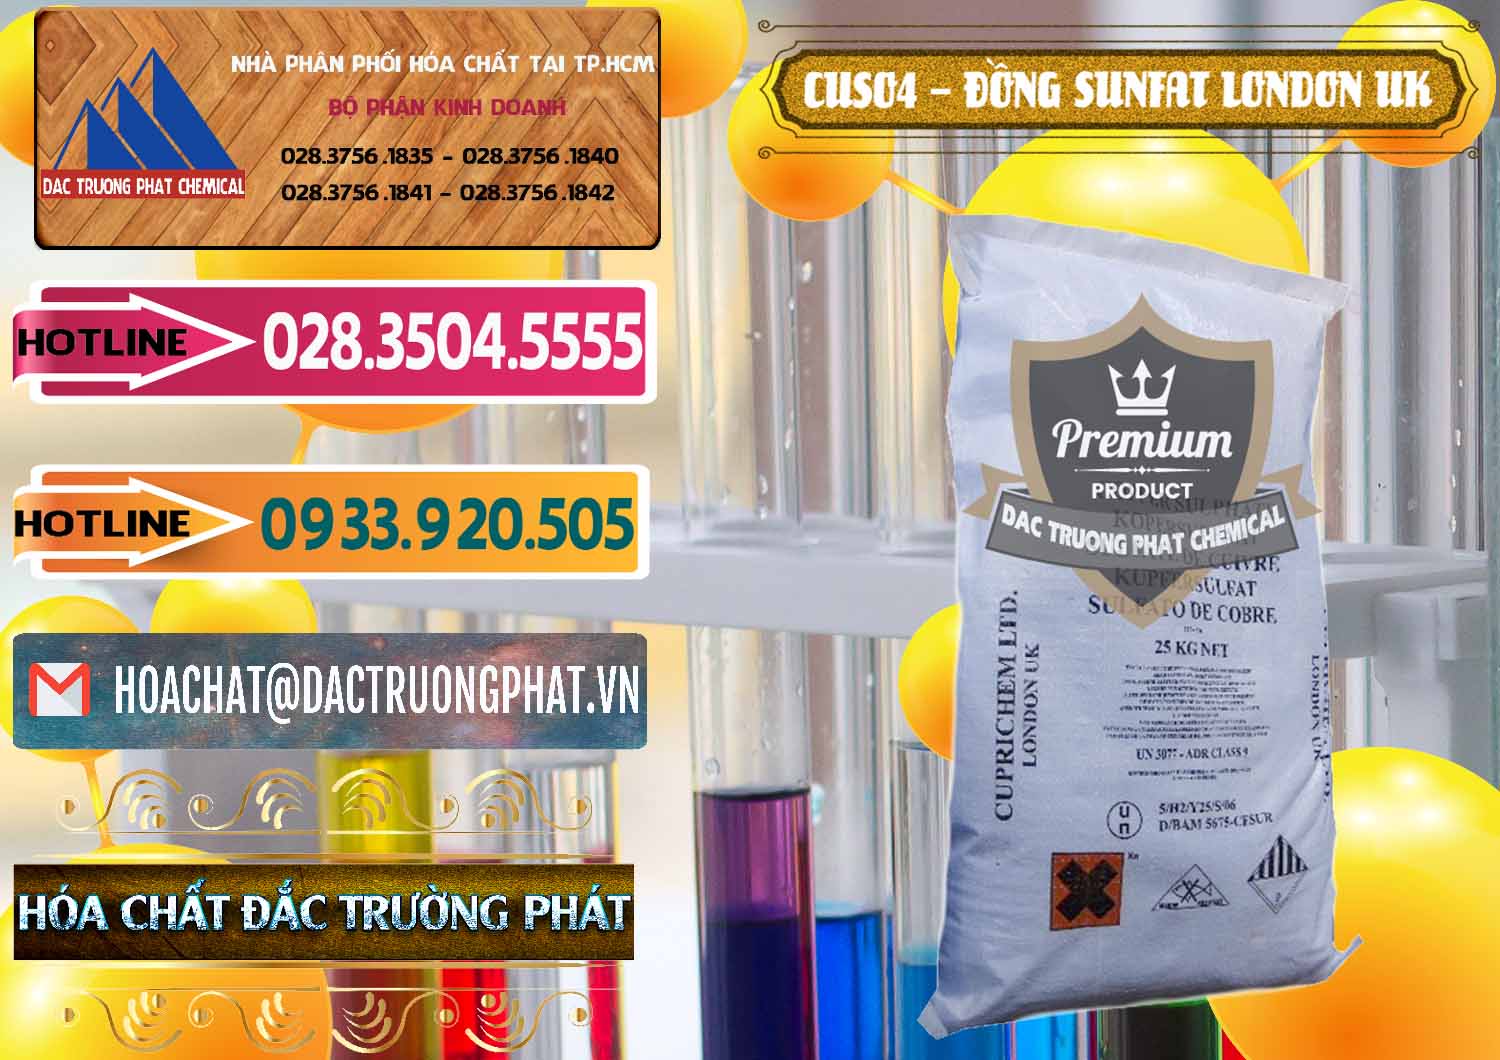 Công ty nhập khẩu và bán CuSO4 – Đồng Sunfat Anh Uk Kingdoms - 0478 - Đơn vị cung cấp & phân phối hóa chất tại TP.HCM - dactruongphat.vn